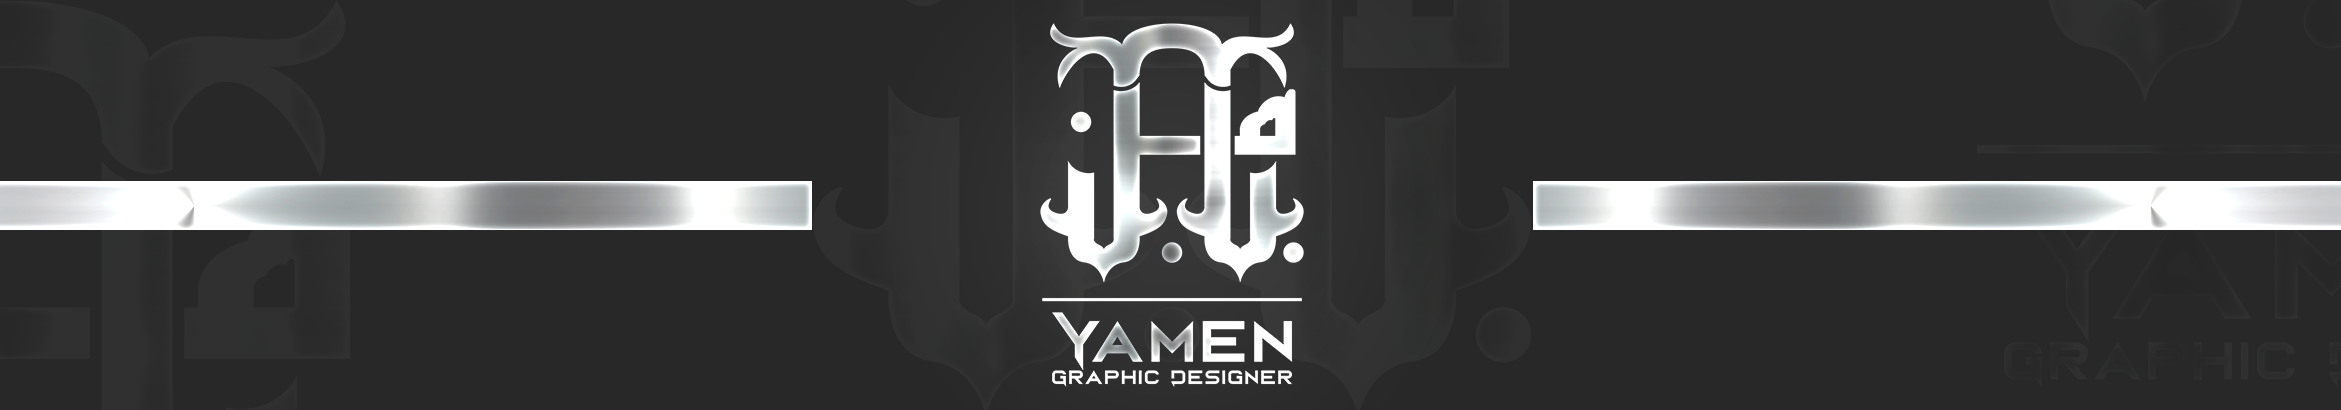 Yamen AL-Qadre's profile banner